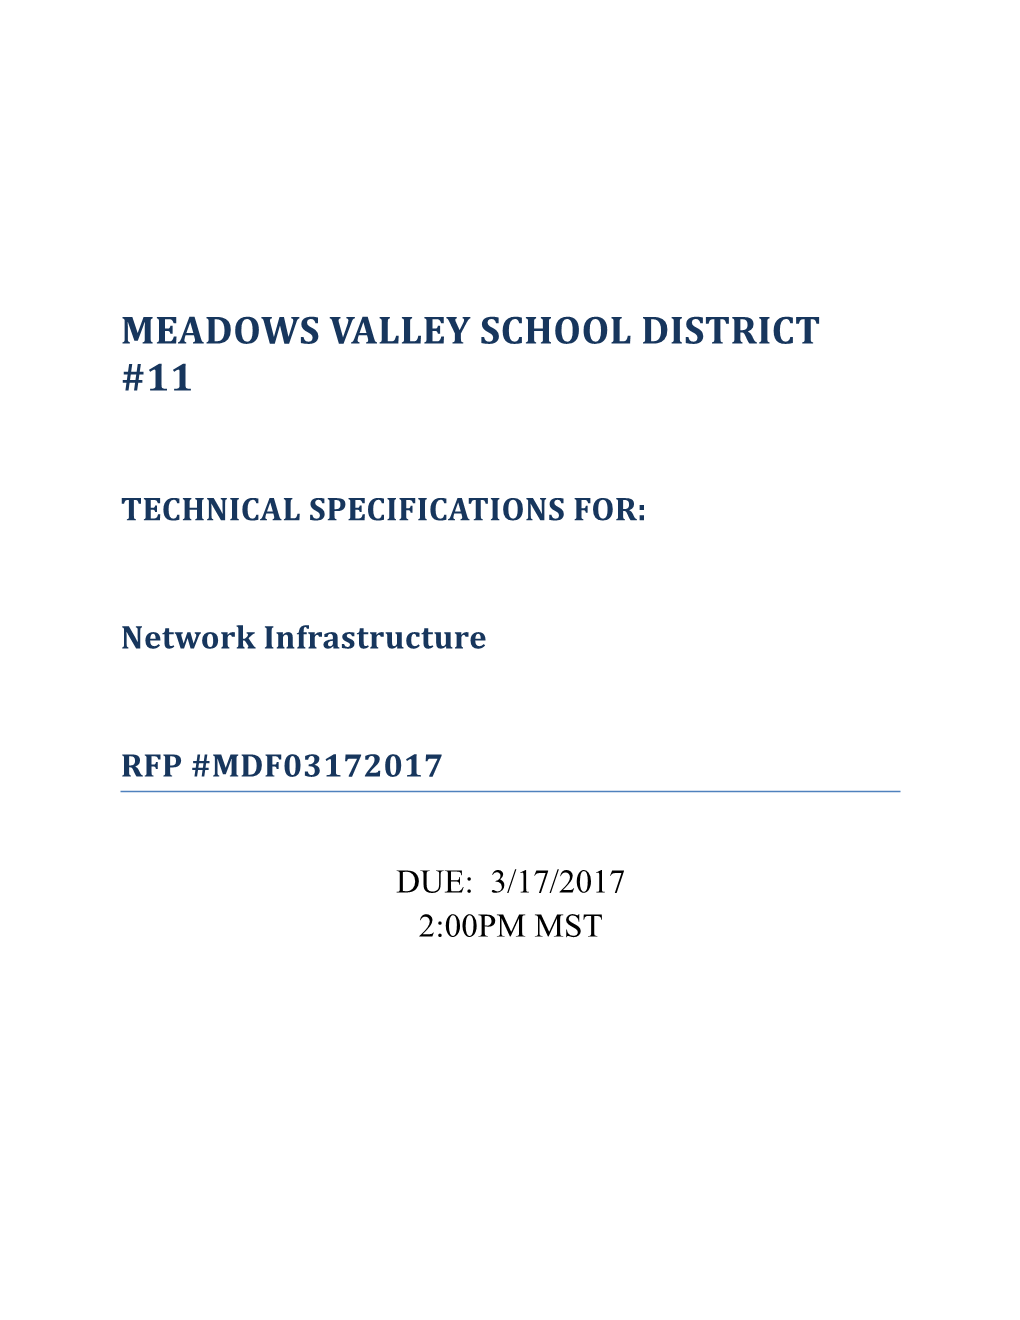 Meadows Valley School District #11